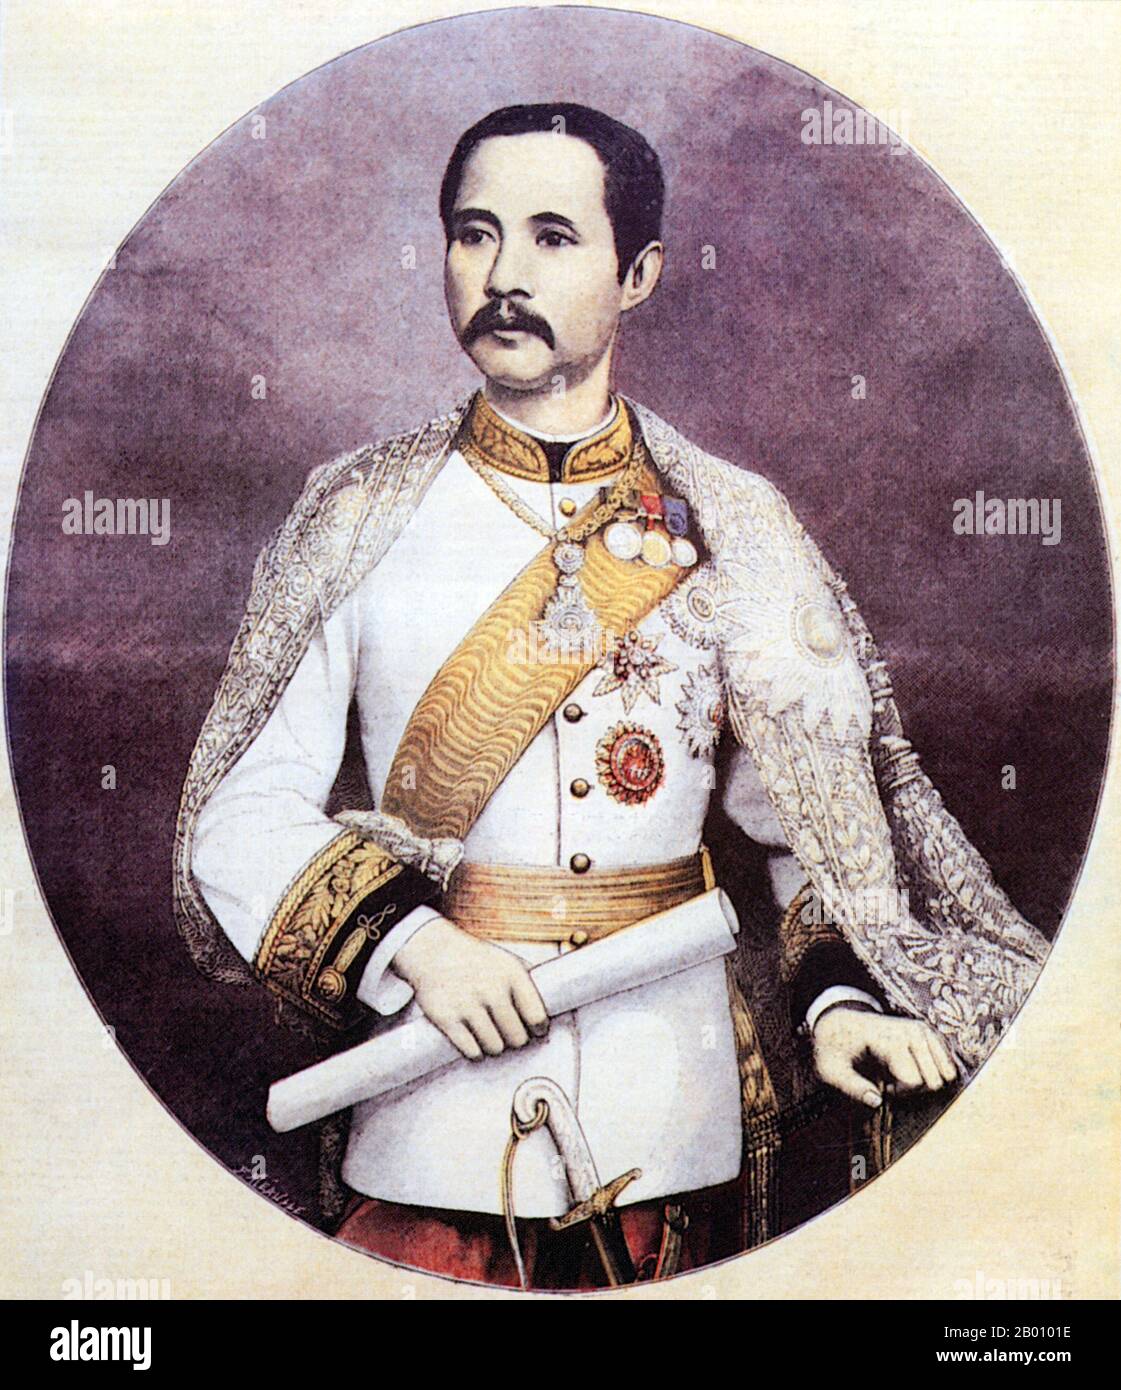 Thailandia: Re Rama V, Chulalongkorn (1 ottobre 1868 – 23 ottobre 1910), quinto monarca della dinastia Chakri. Ritratto di Fortune-Louis Meaulle (1844-1916), 1897. Phra Bat Somdet Phra Poramintharamaha Chulalongkorn Phra Chunla Chom Klao Chao Yu Hua, o Rama V (20 settembre 1853 – 23 ottobre 1910), è stato il quinto monarca del Siam sotto la Casa di Chakri. È considerato uno dei più grandi re del Siam. Il suo regno fu caratterizzato dalla modernizzazione del Siam, da immense riforme governative e sociali, e da cessioni territoriali all'Impero britannico e all'Indochina francese. Foto Stock